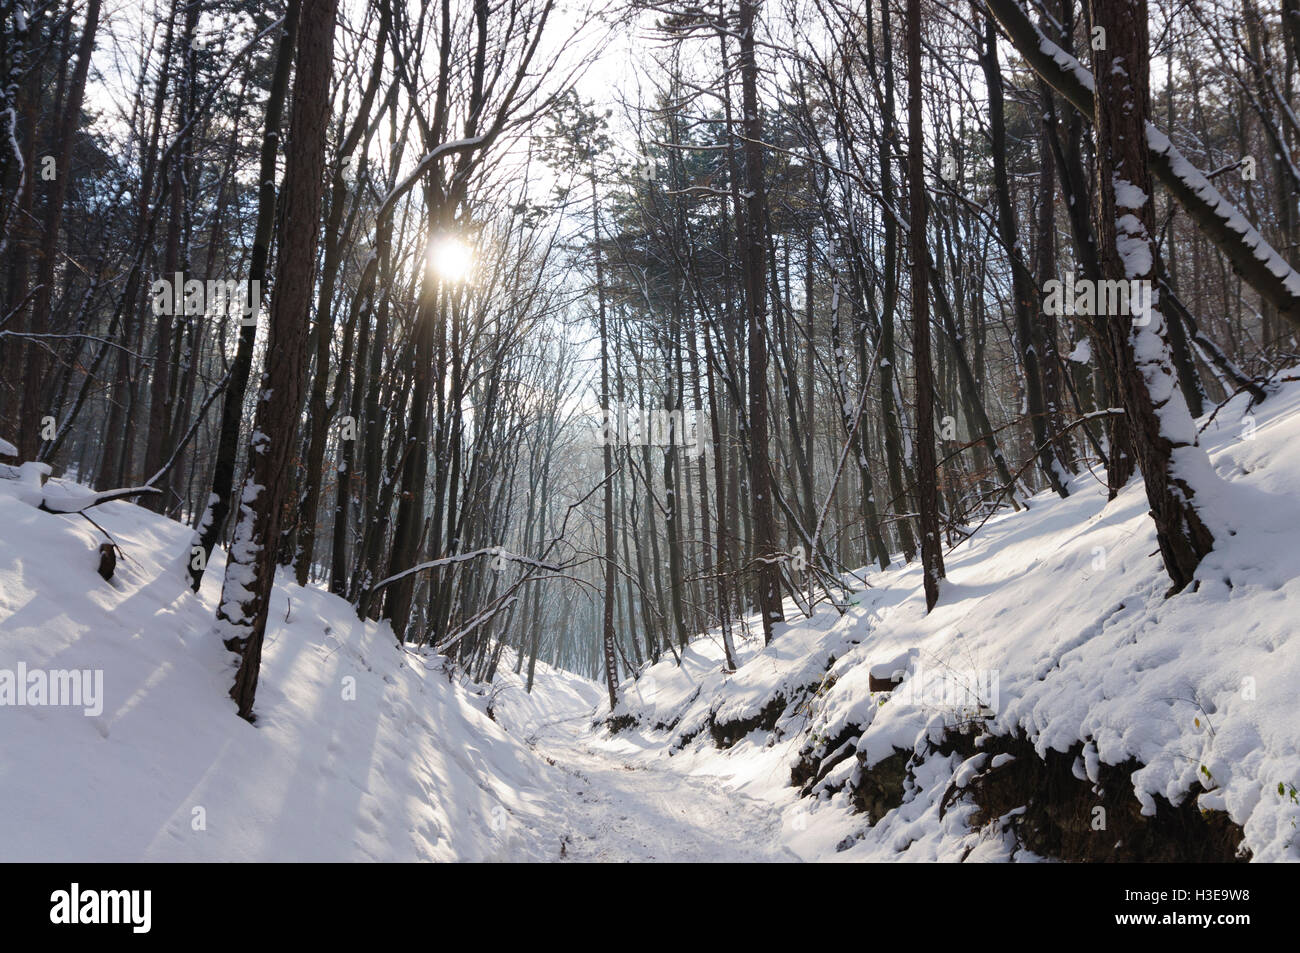 Baden: Ravine in the Vienna Woods in the snow, Wienerwald, Vienna Woods, Niederösterreich, Lower Austria, Austria Stock Photo